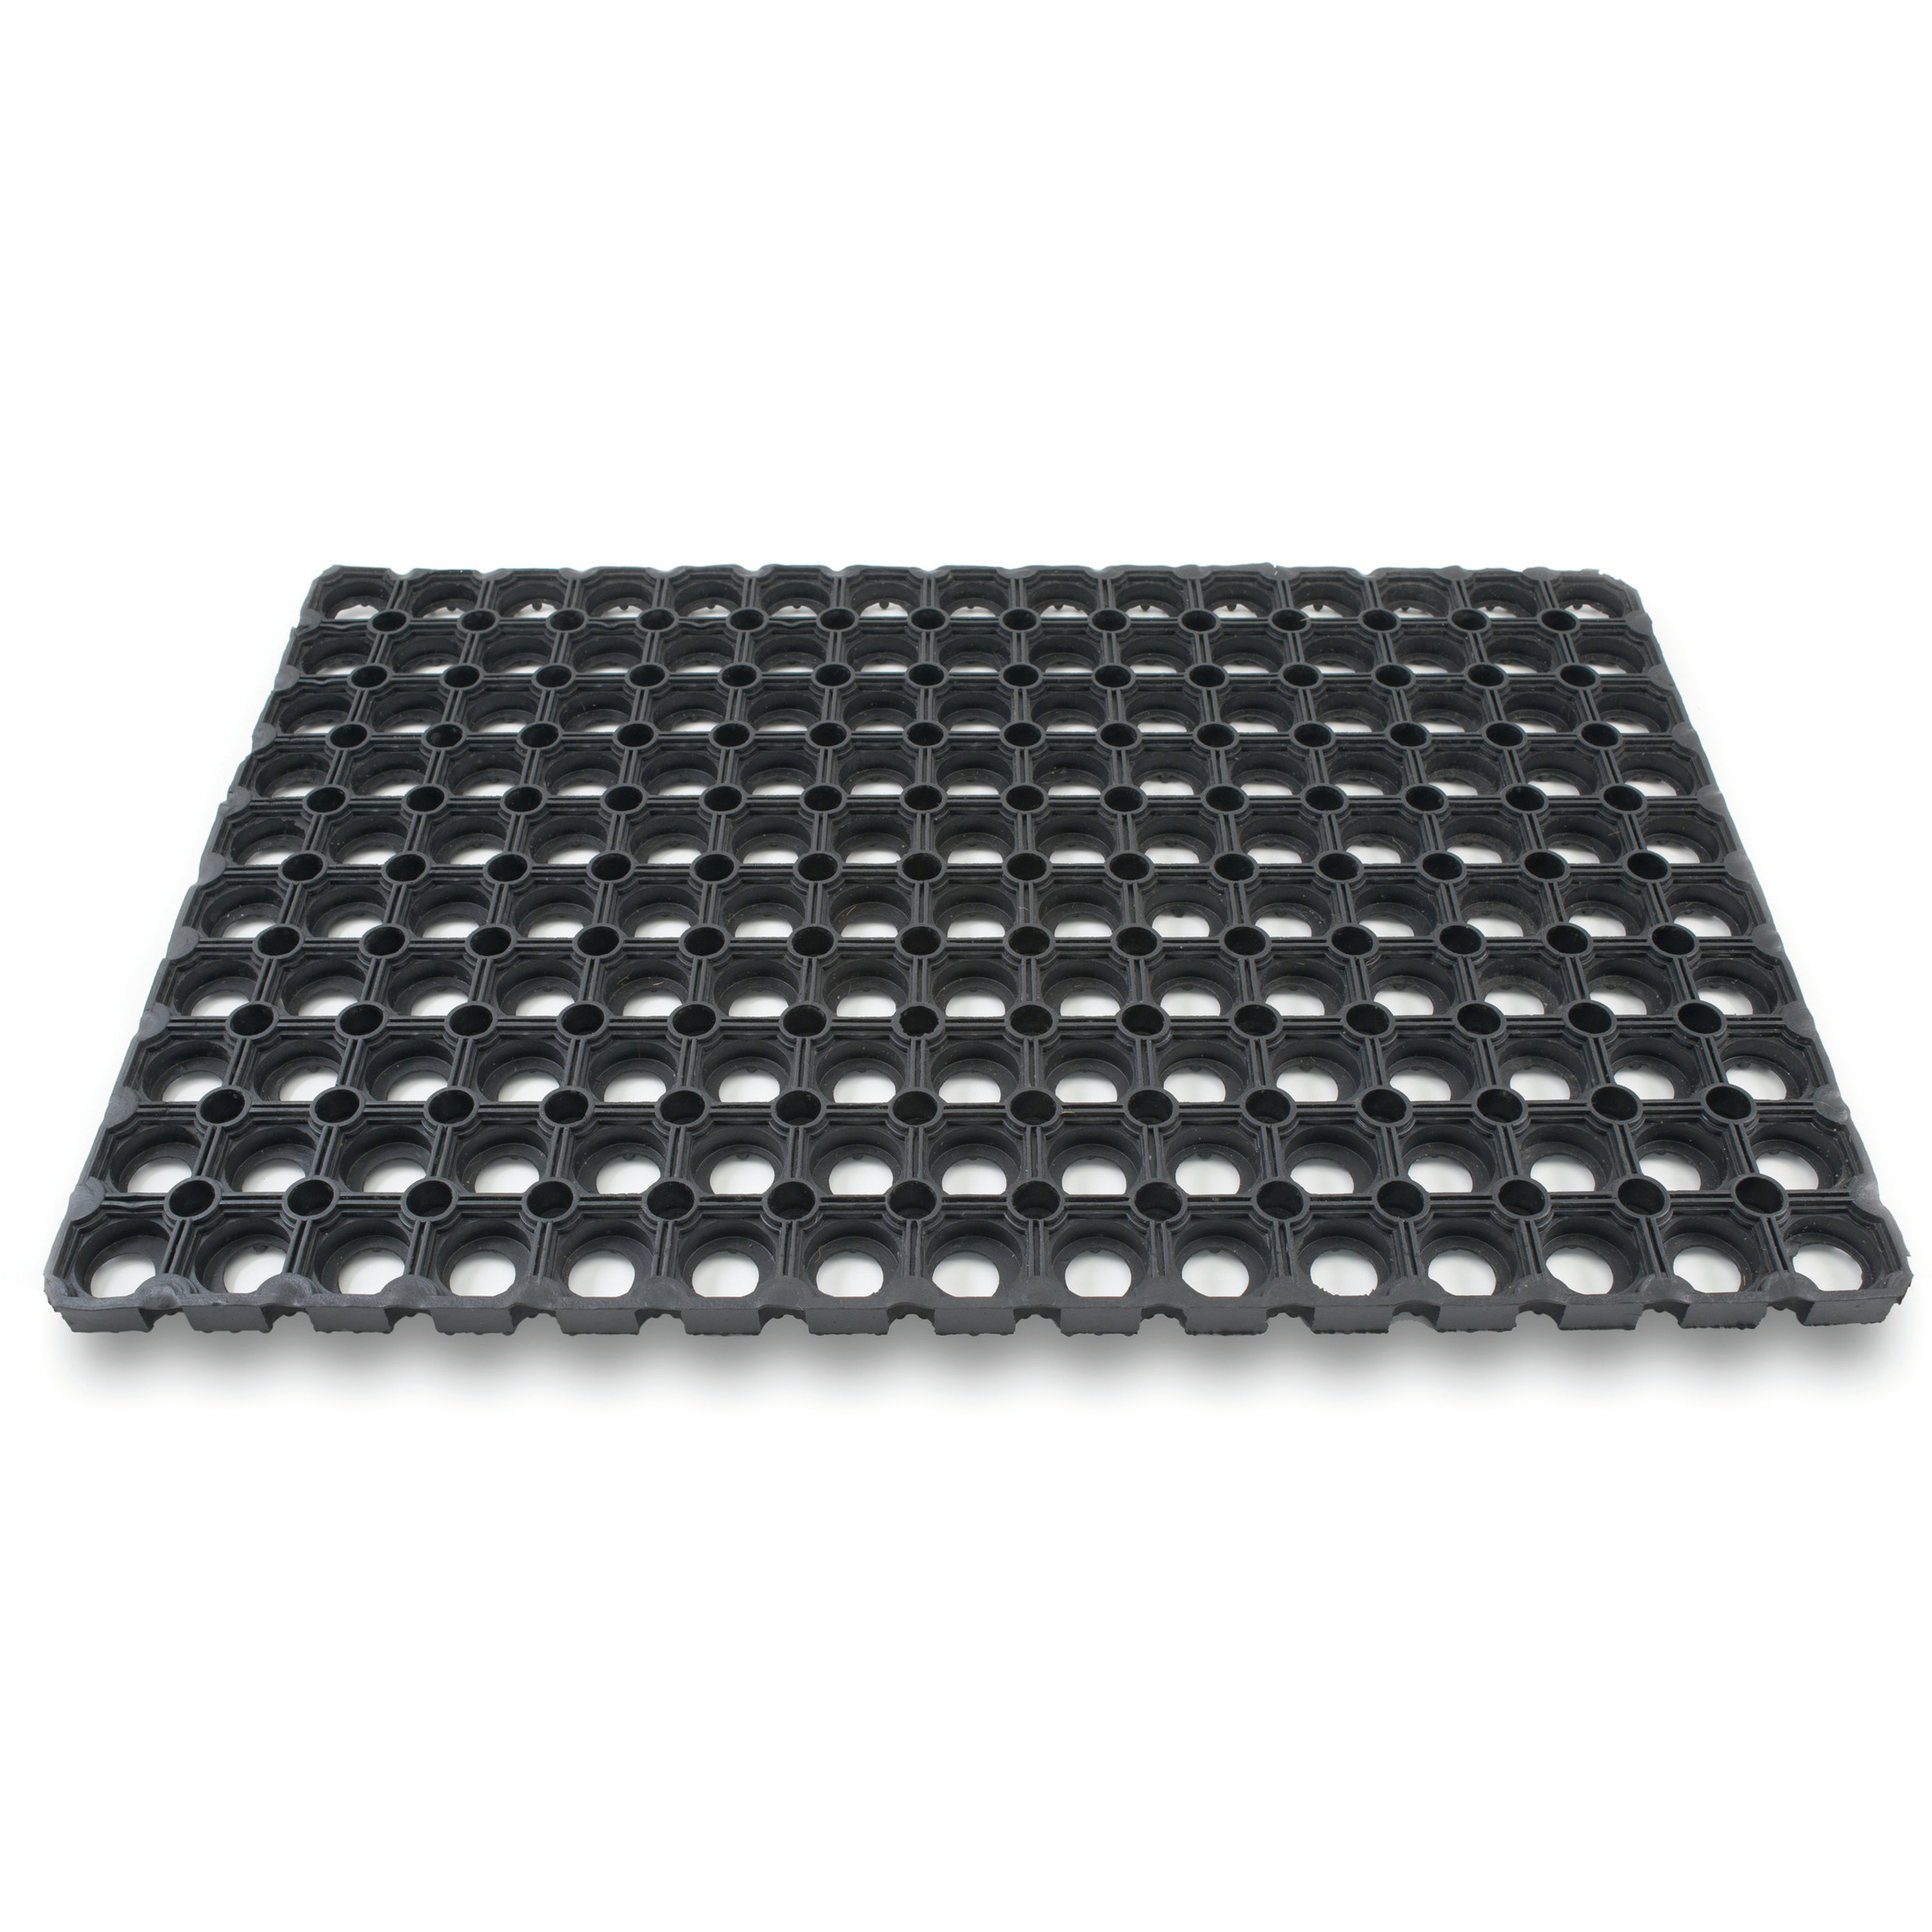 2x Rubberen deurmatten/schoonloopmatten zwart 40 x 60 cm - Deurmat schoonloopmat - Inloopmat/inloopmatten - Buitenmatten - Voeten vegen